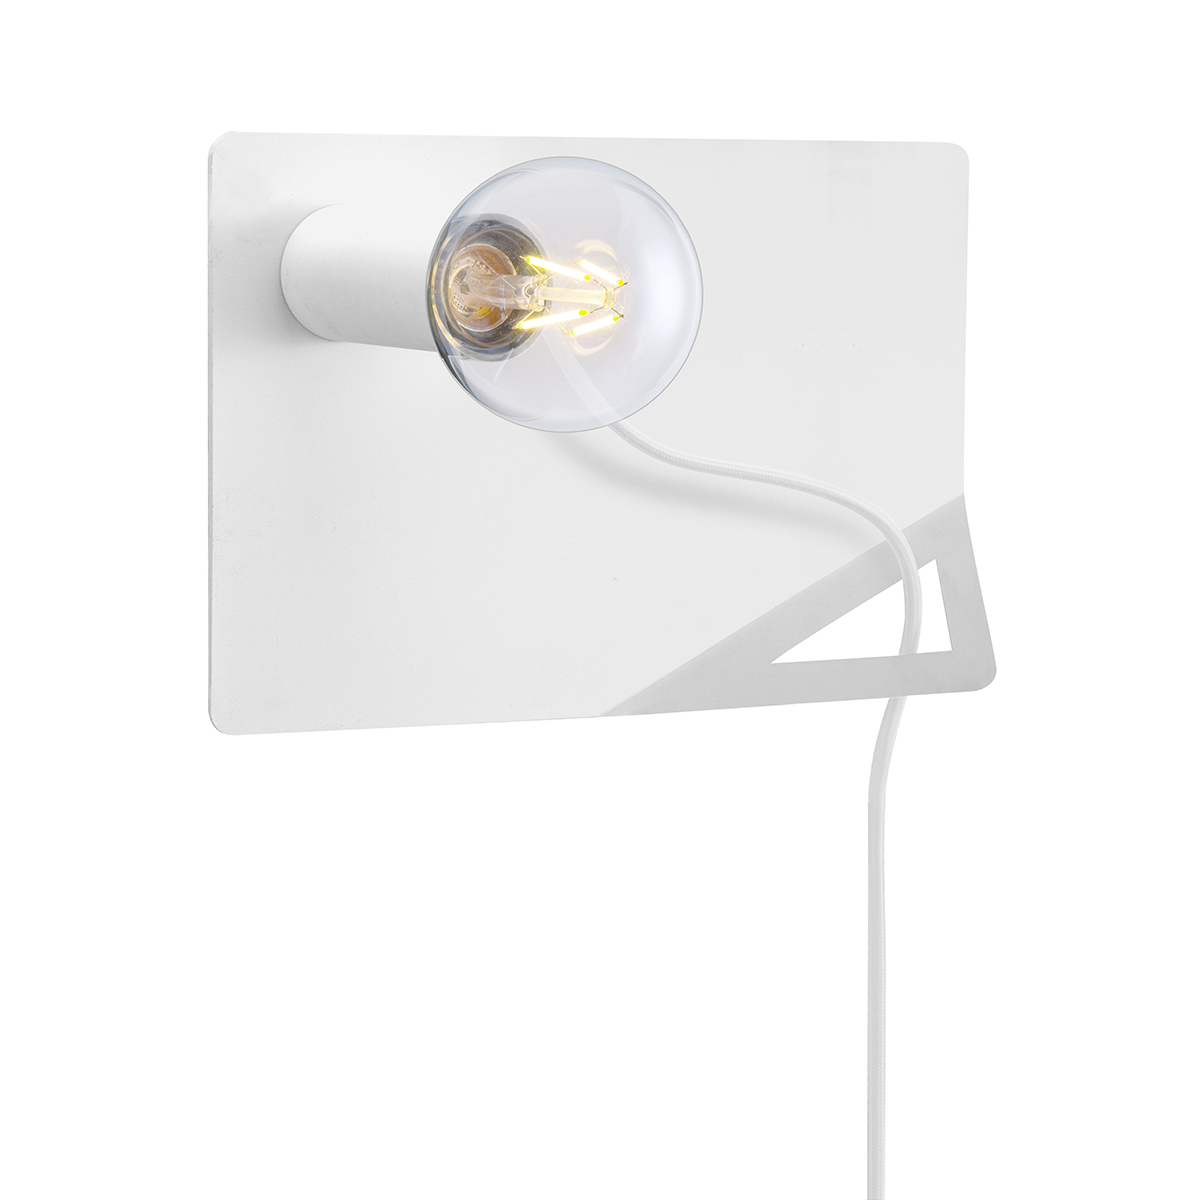 Tangla lighting - TLW7077-01SW - LED Wall lamp 1 Light - metal - sand white  - swivel film - E27